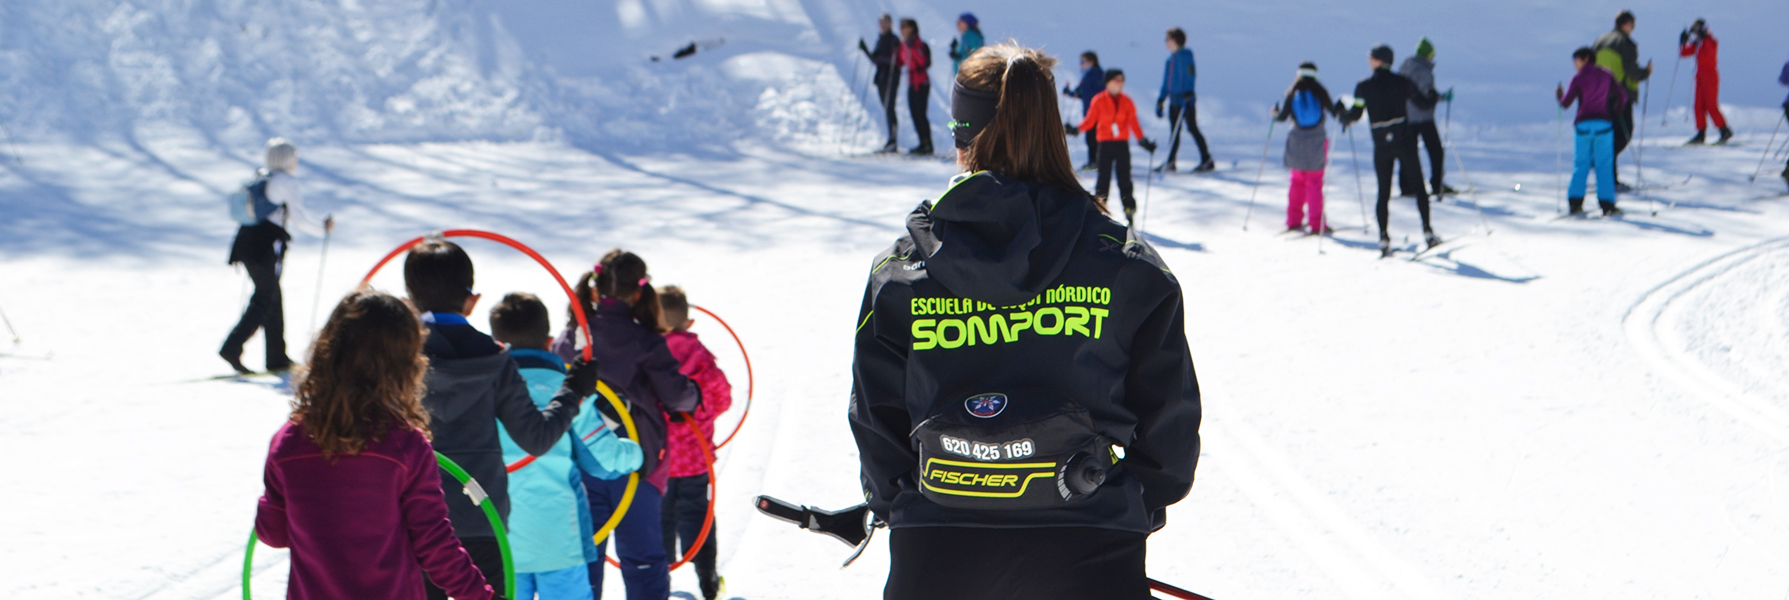 GRUPOS esqui nórdico en Somport<br />
SKI4, TRIBU, Colegios y colectivos… Iniciación y perfeccionamiento